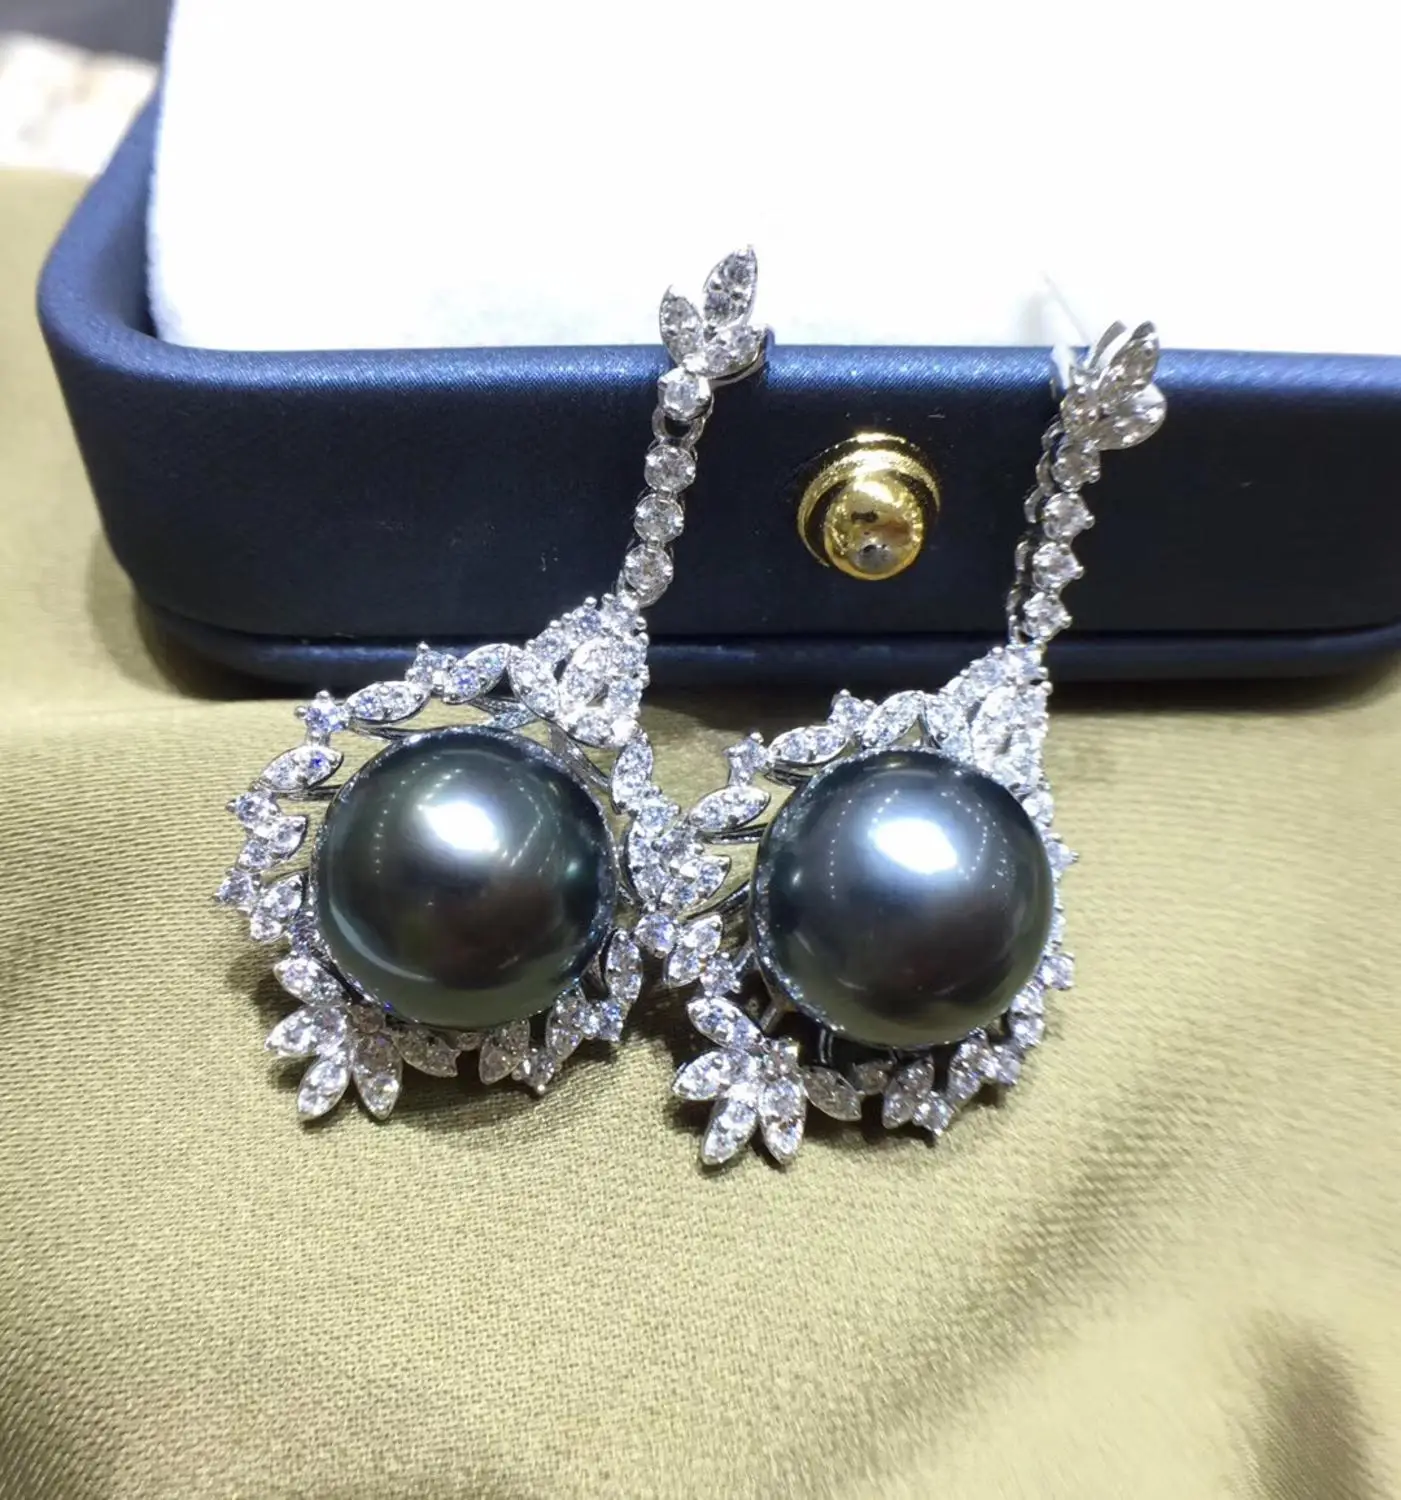 Hot Sale 925 Sterling Silver Earrings Fashion Stud Earrings Settings Findings Jewelry Parts Fittings Women's Accessories